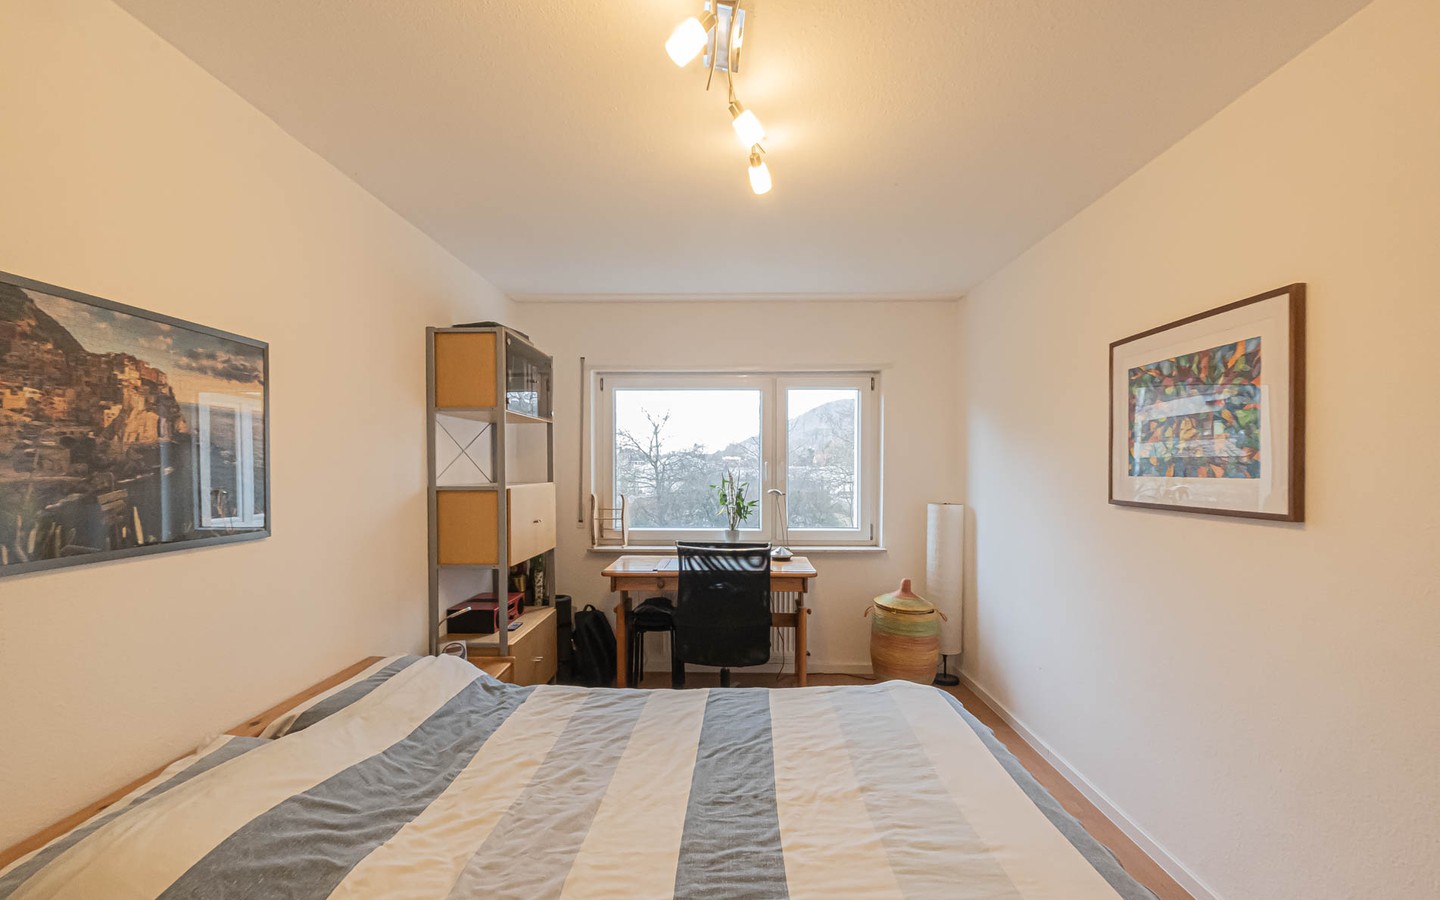 Schlafzimmer - Willkommen in Handschuhsheim: Tolle Zweizimmerwohnung mit Süd-Balkon